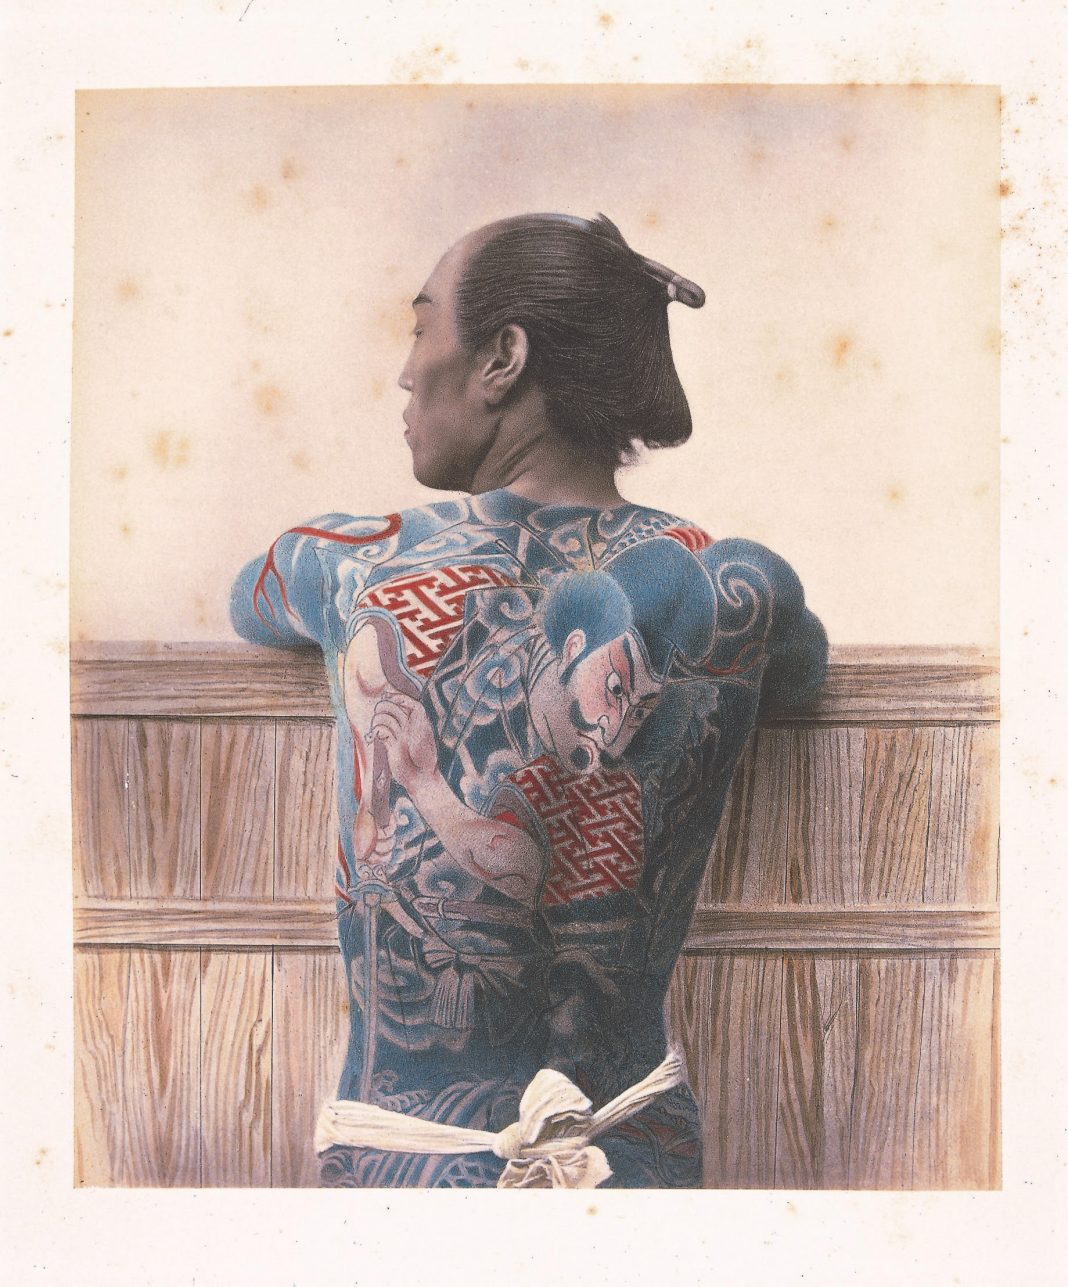 Adolfo Farsari. Il fotografo italiano che ha ritratto il Giappone di fine ‘800https://www.exibart.com/repository/media/formidable/11/unnamed-1-5-1068x1287.jpg